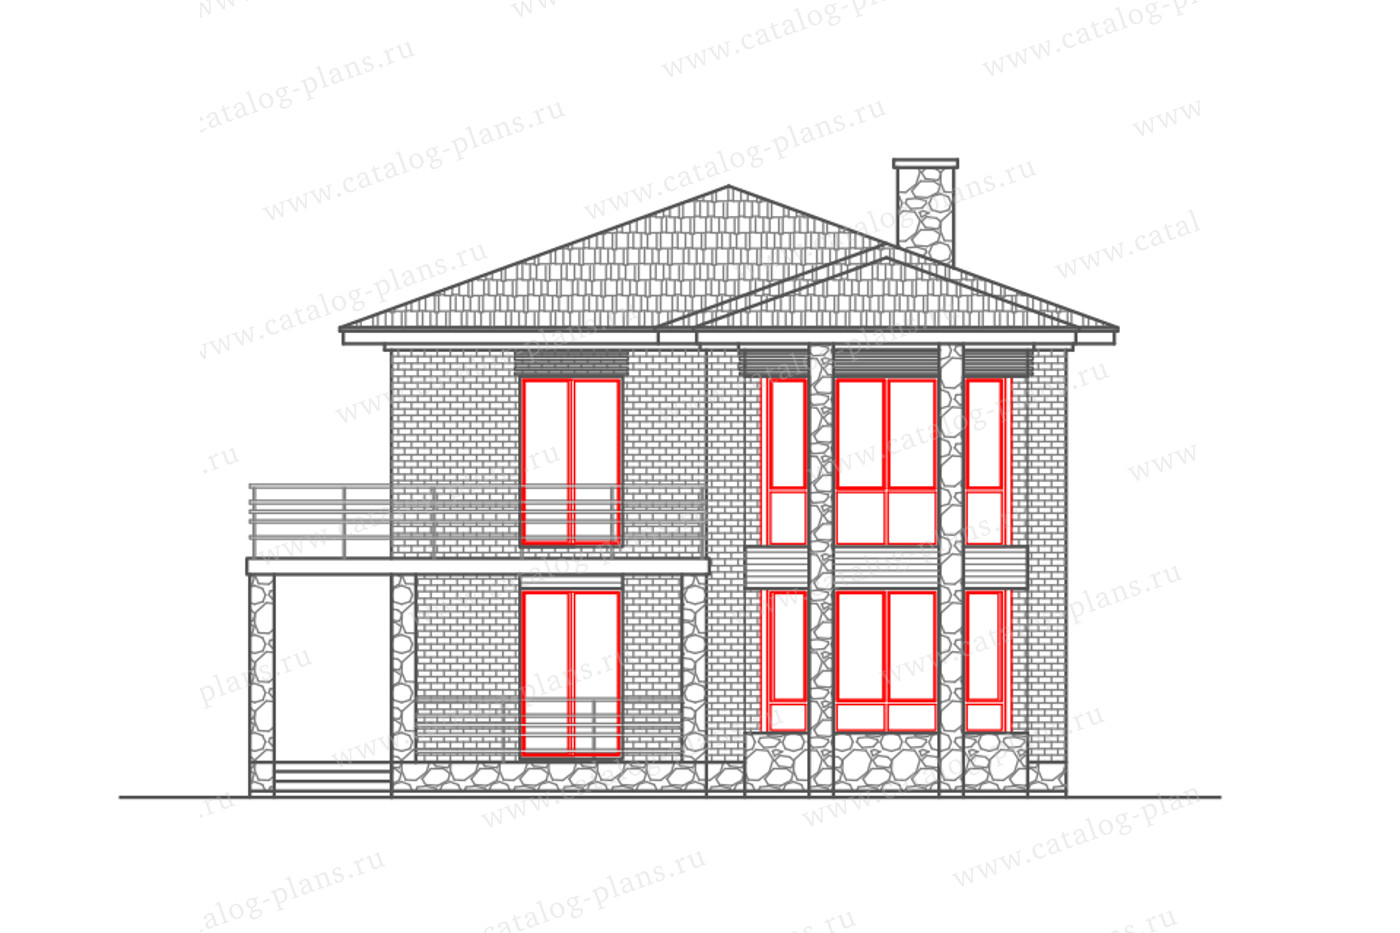 Проект 58-92DL, жилой дом, материал - газобетонные блоки 400, количество этажей - 2, архитектурный стиль - хай-тек, фундамент - монолитная ж/б плита